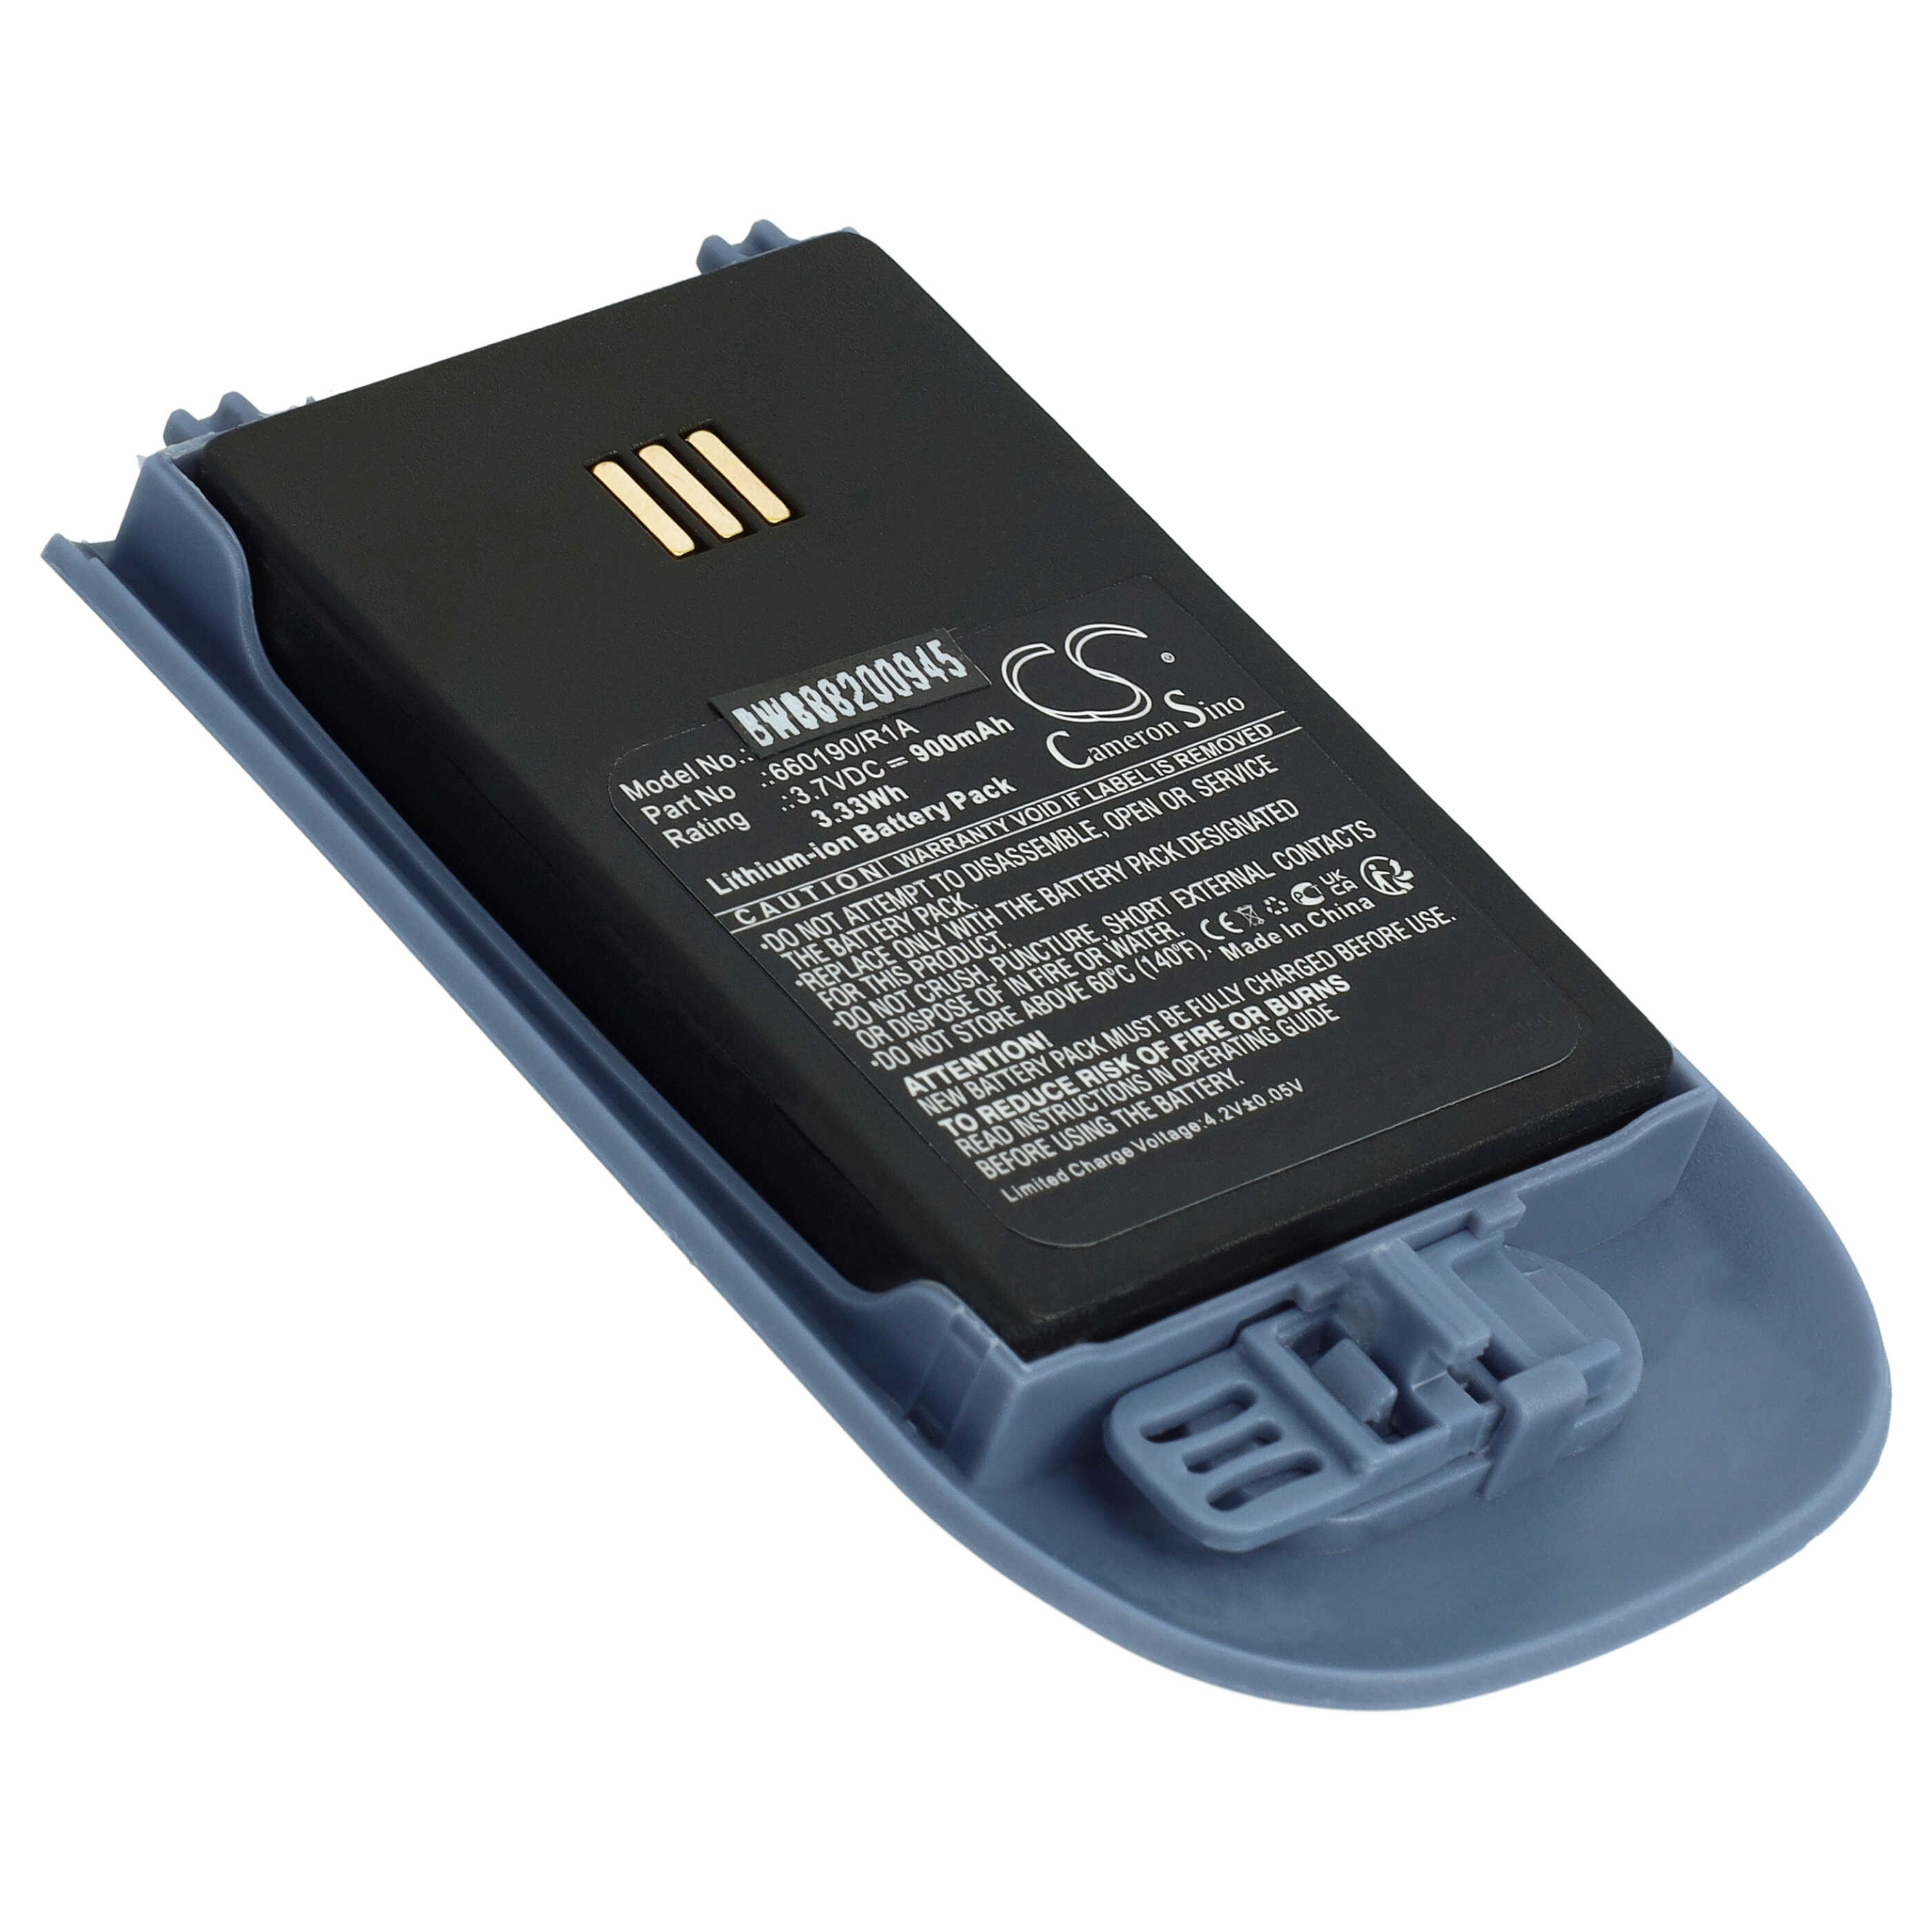 Batterie remplace Alcatel 3BN78404AA, WH1-EABA/1A1, 0480468 pour téléphone - 900mAh 3,7V Li-ion